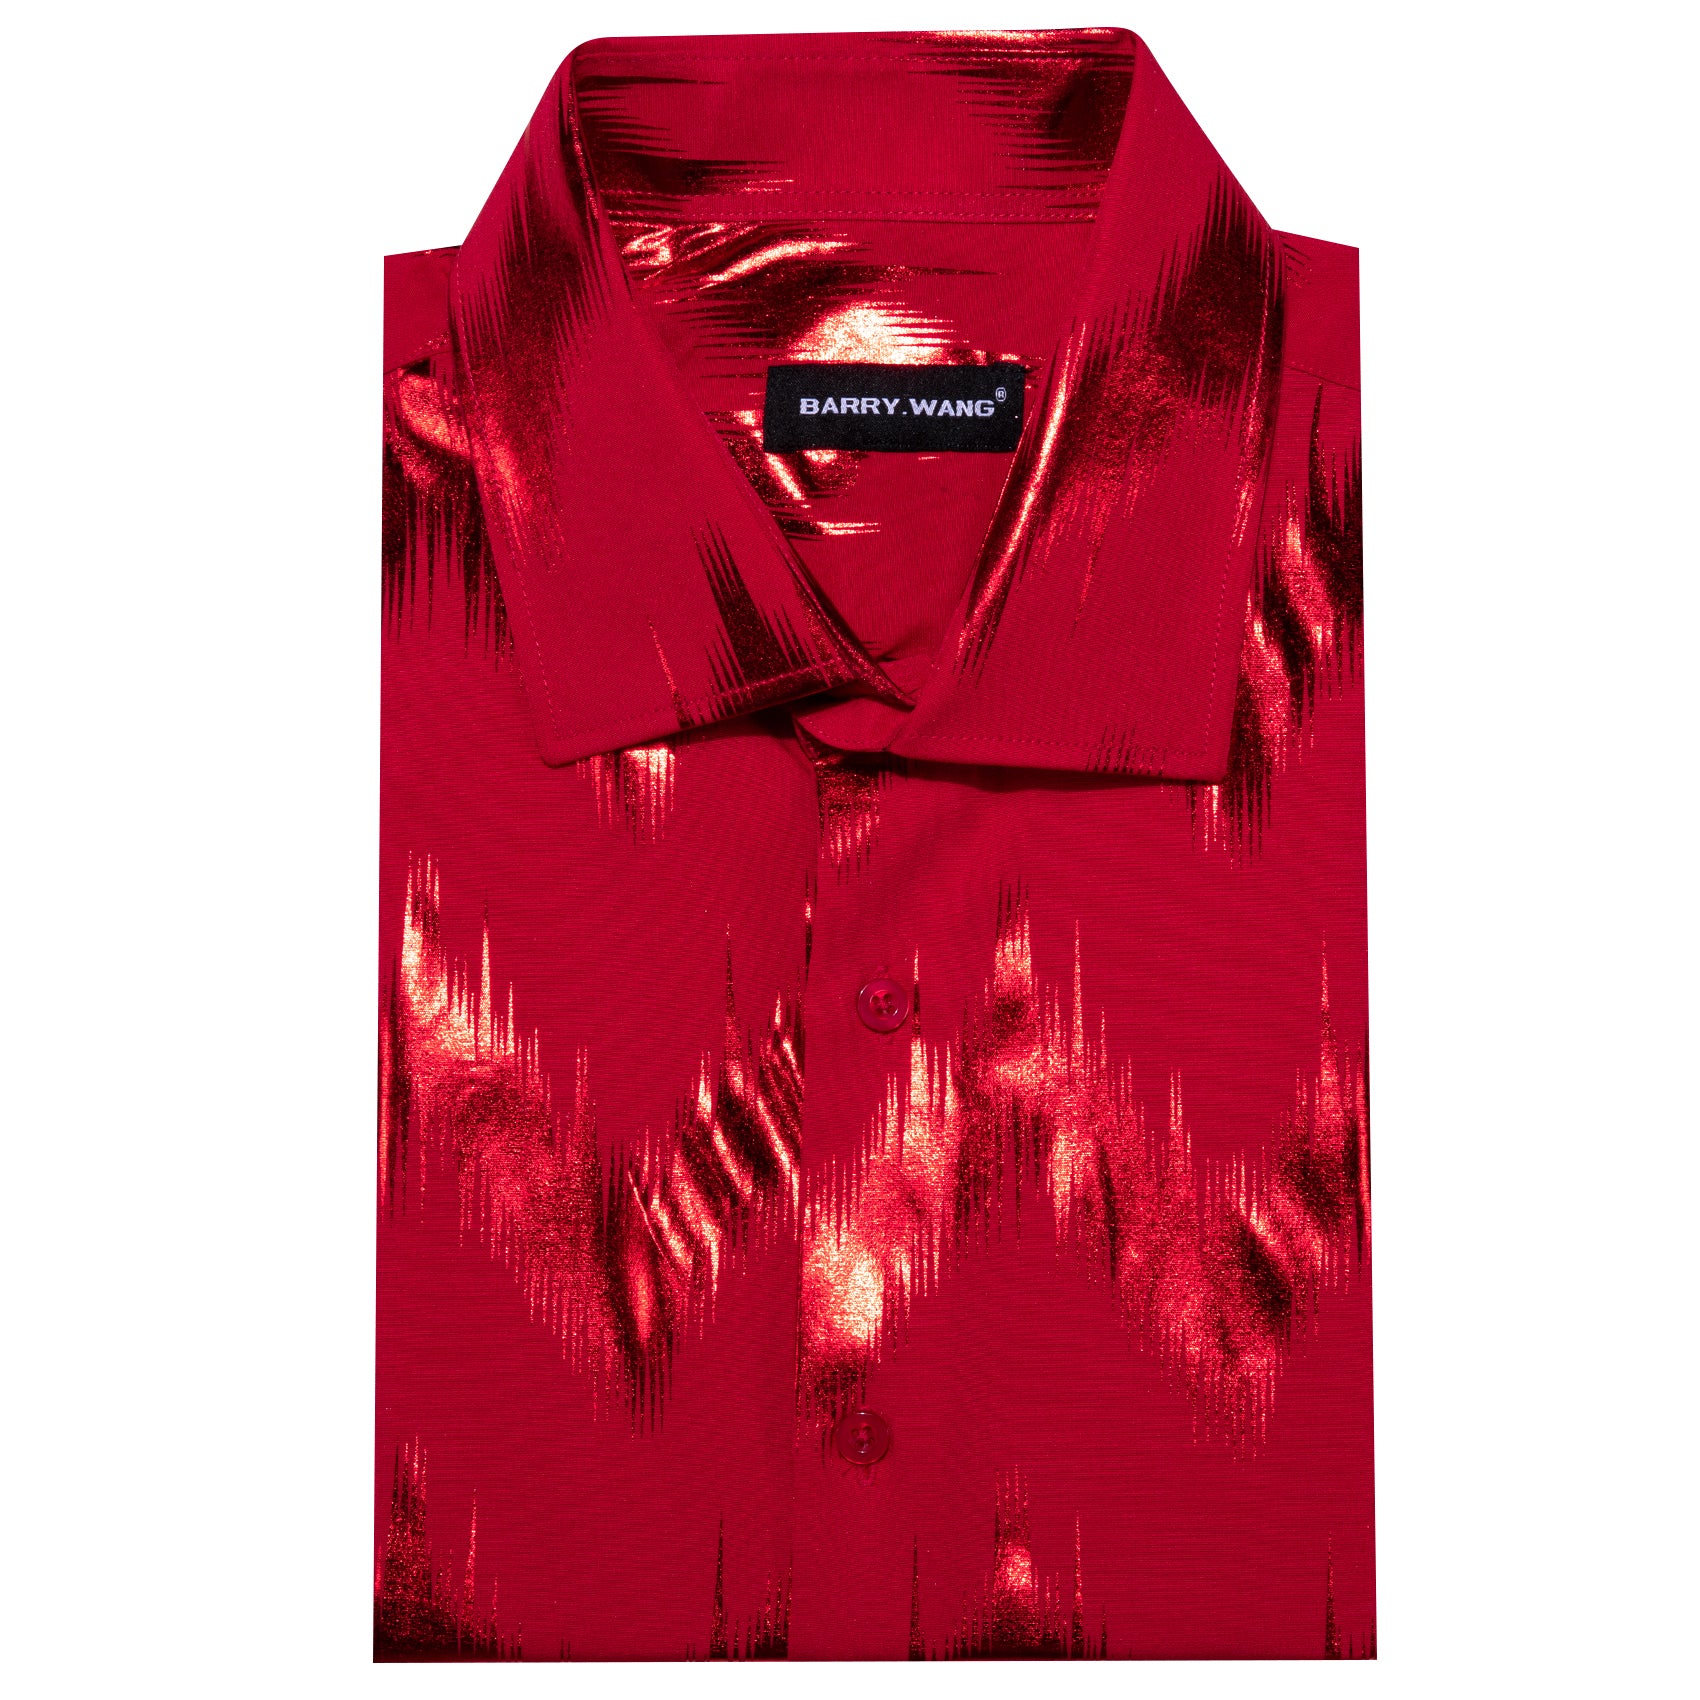 Barry.wang Stylish Shirt Bronzing Printing Red Men's Shirt